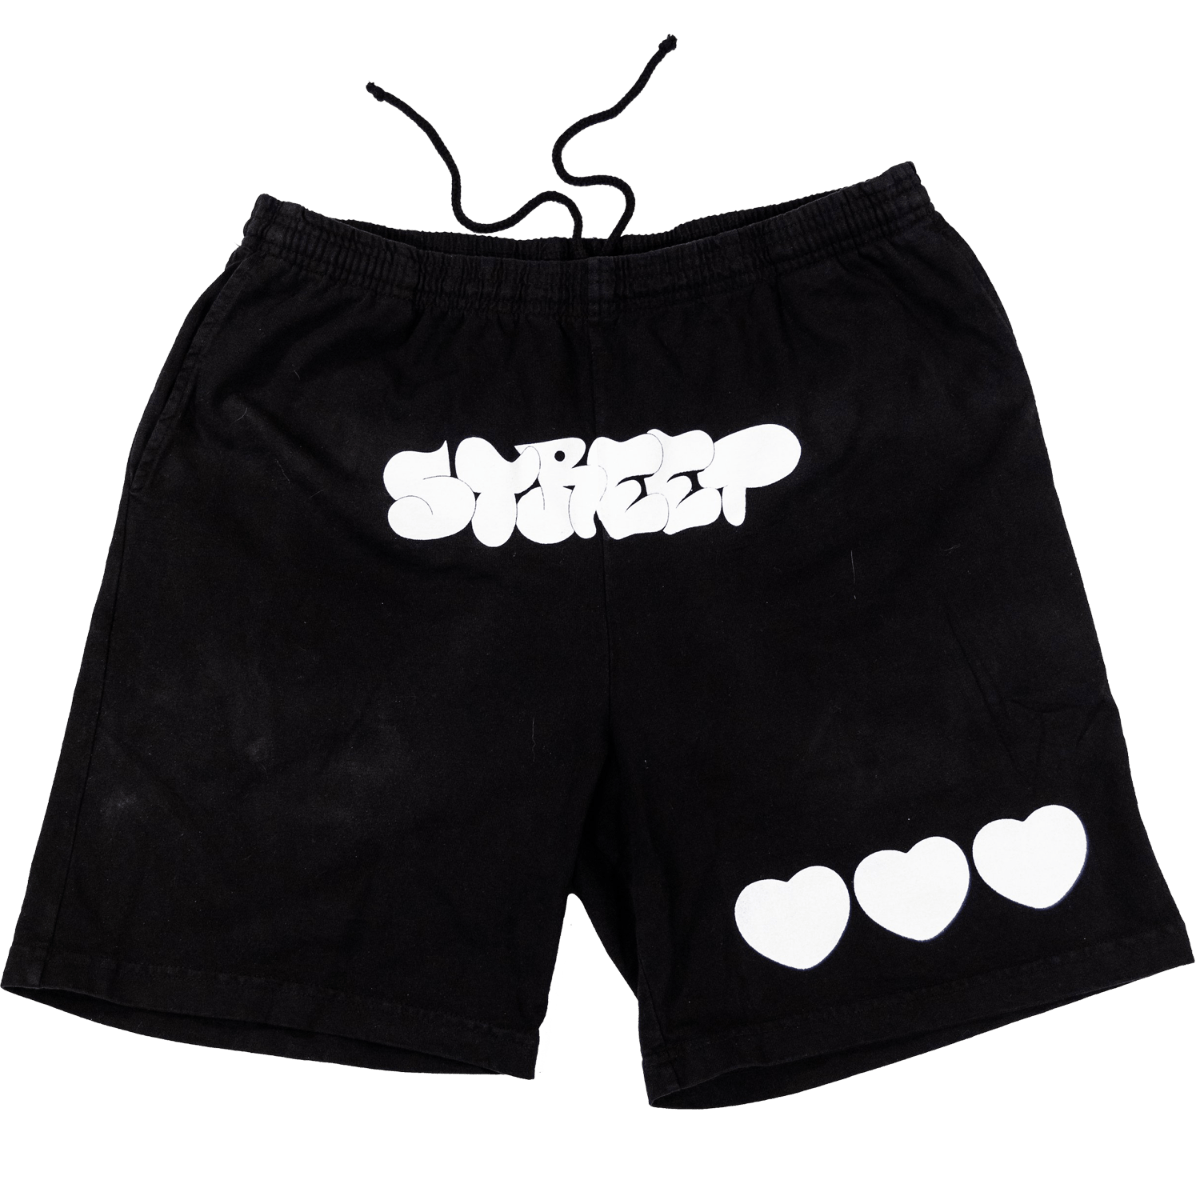 The Topanga Shorts